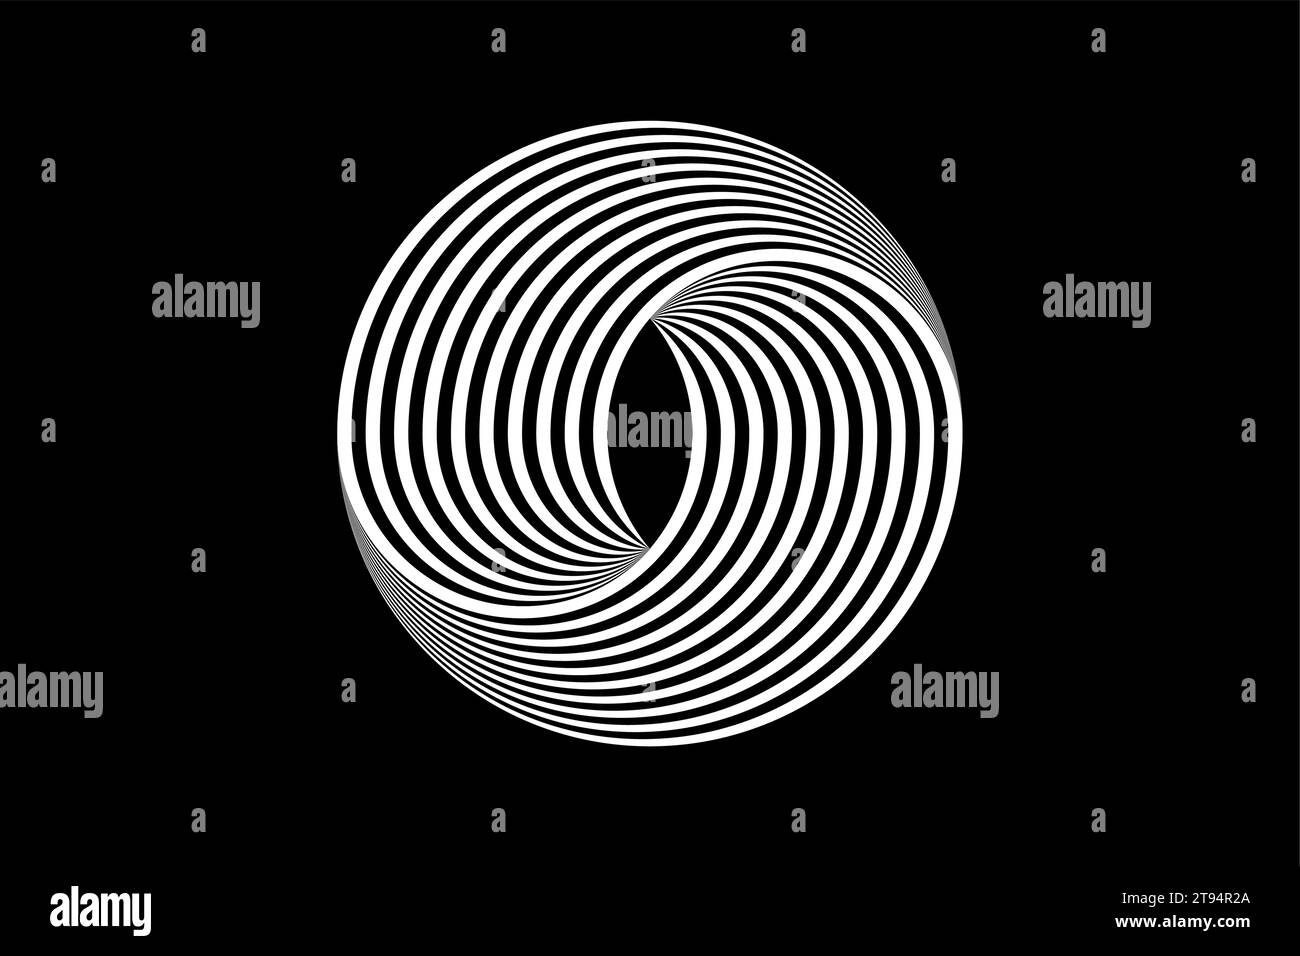 3D-Logo abstrakte schwarz-weiße Kreise, geometrisches Muster mit visueller Verzerrung. Illusion der Rotation. Op Art. Vektor isoliert Stock Vektor